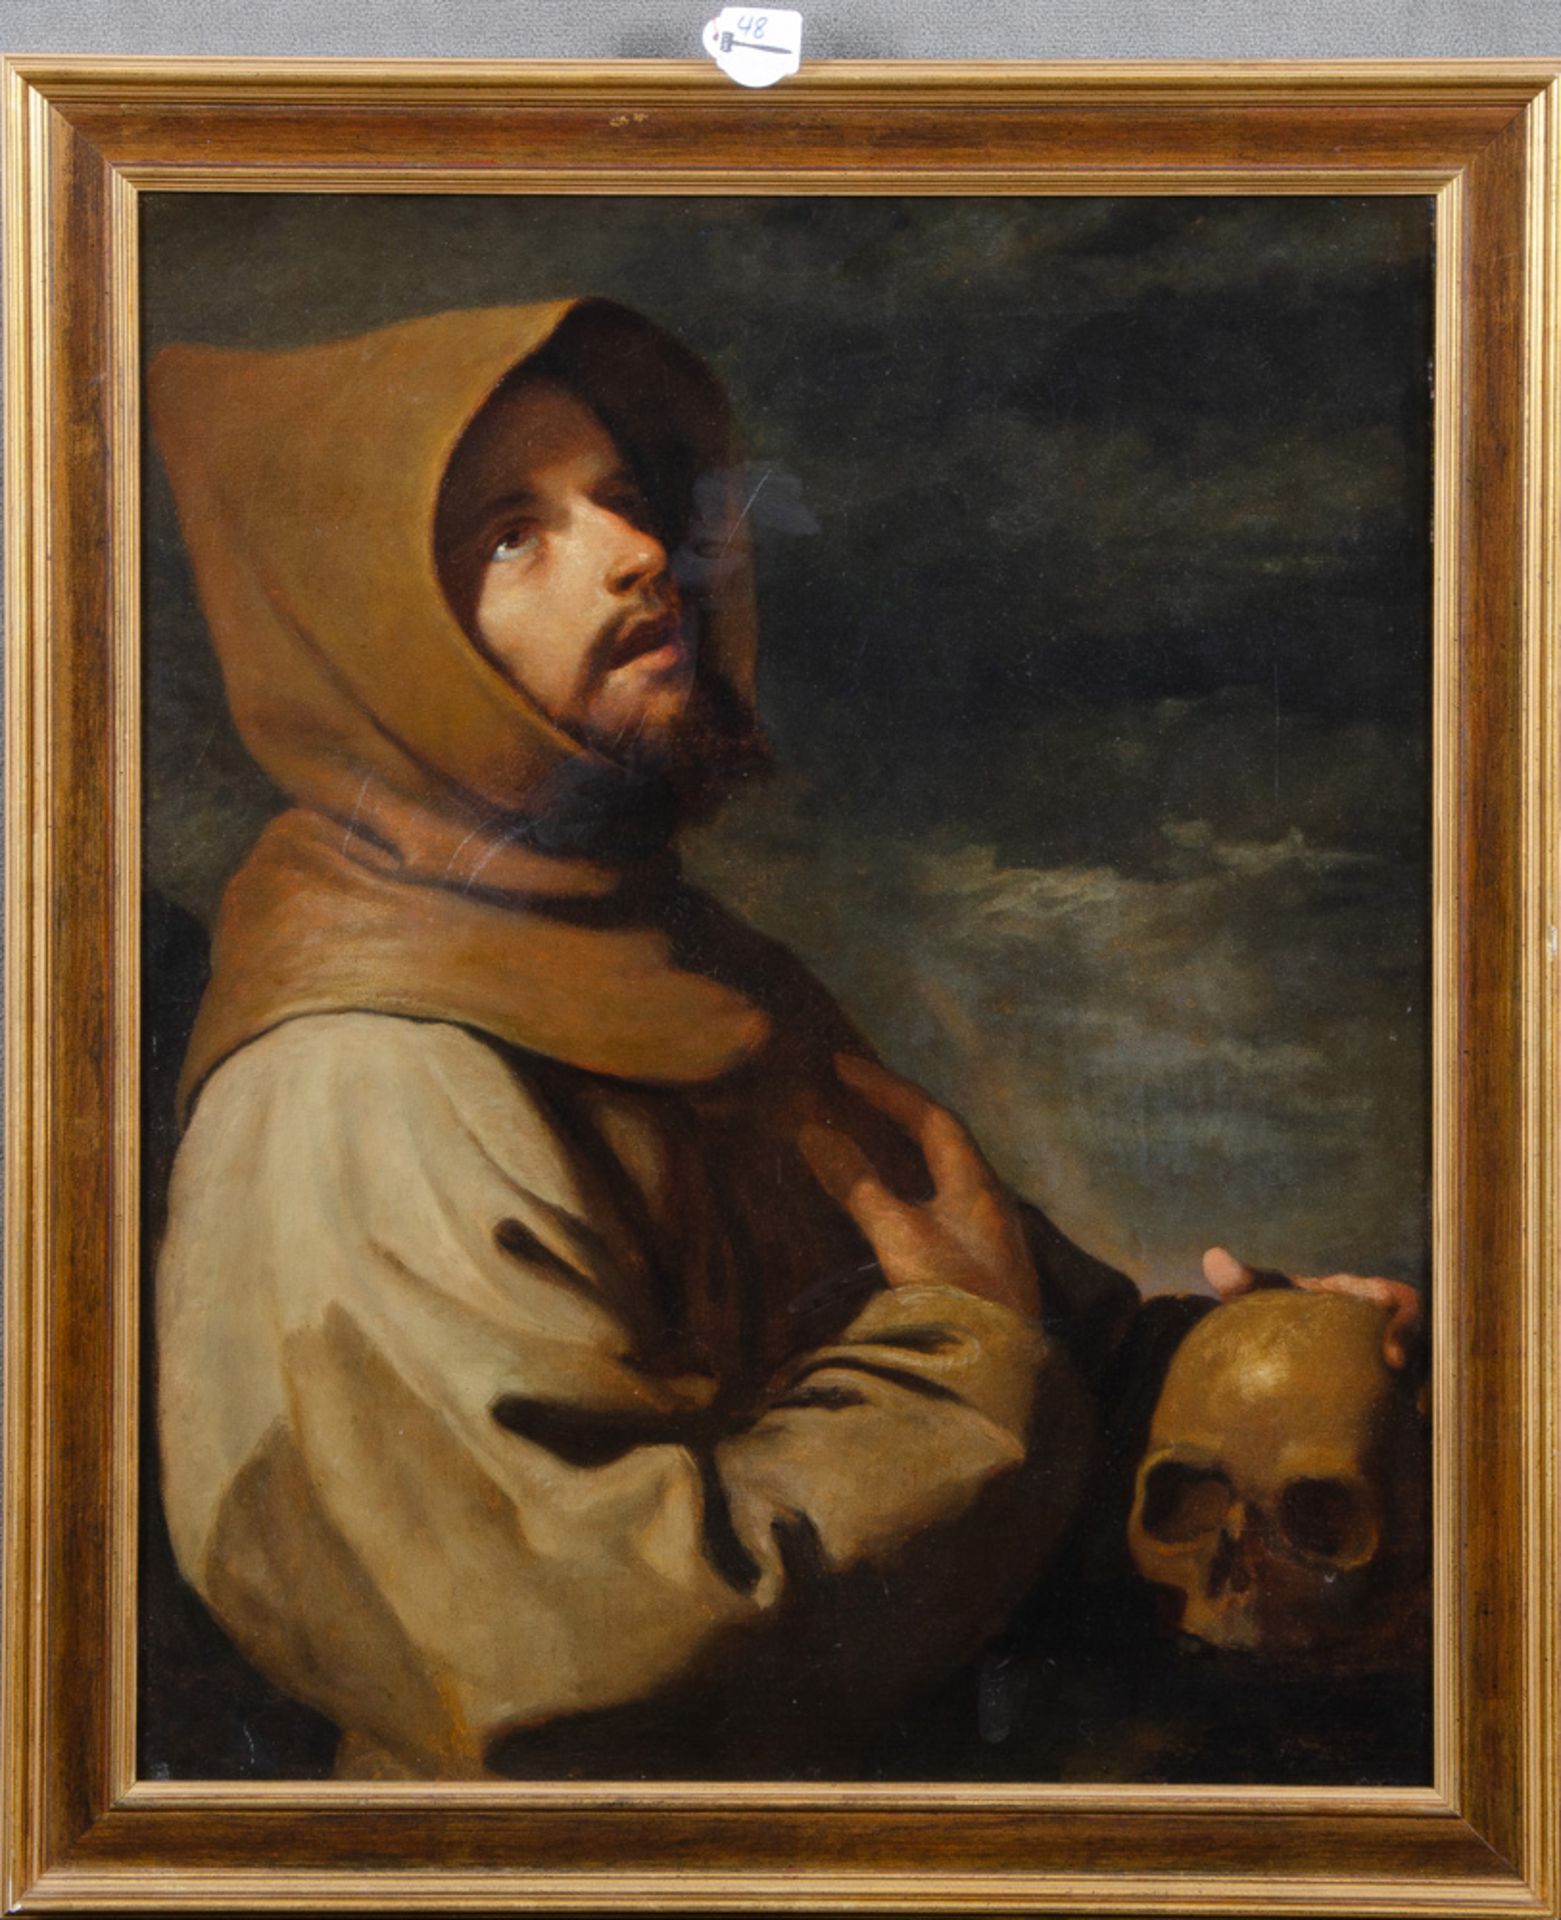 Unbekannter Meister des 18./19. Jhs. Hl. Franziskus. Öl/Lw., gerahmt, 64,5 x 52 cm. ** Non-binding